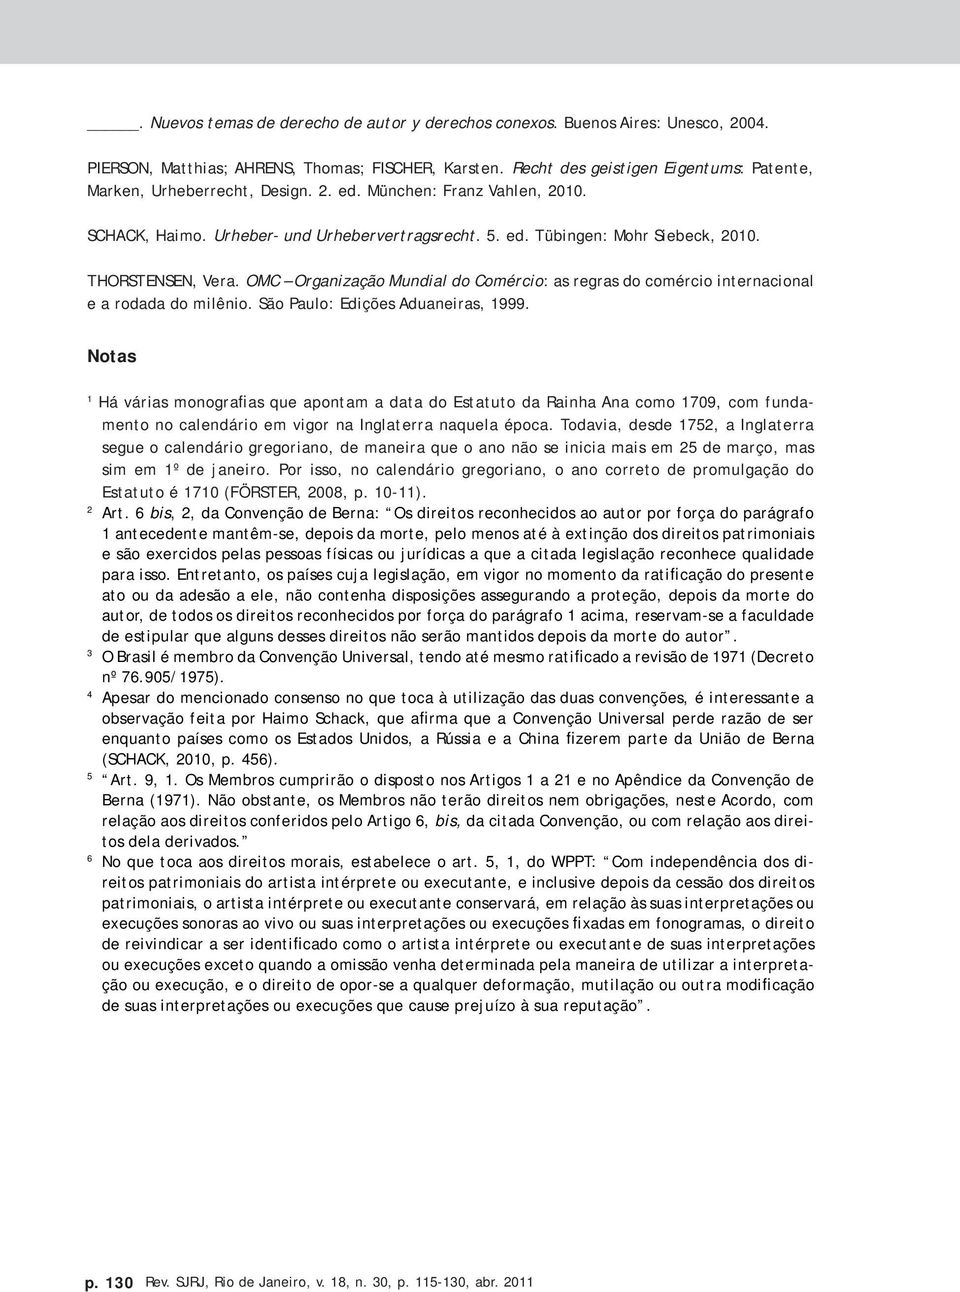 THORSTENSEN, Vera. OMC Organização Mundial do Comércio: as regras do comércio internacional e a rodada do milênio. São Paulo: Edições Aduaneiras, 1999.